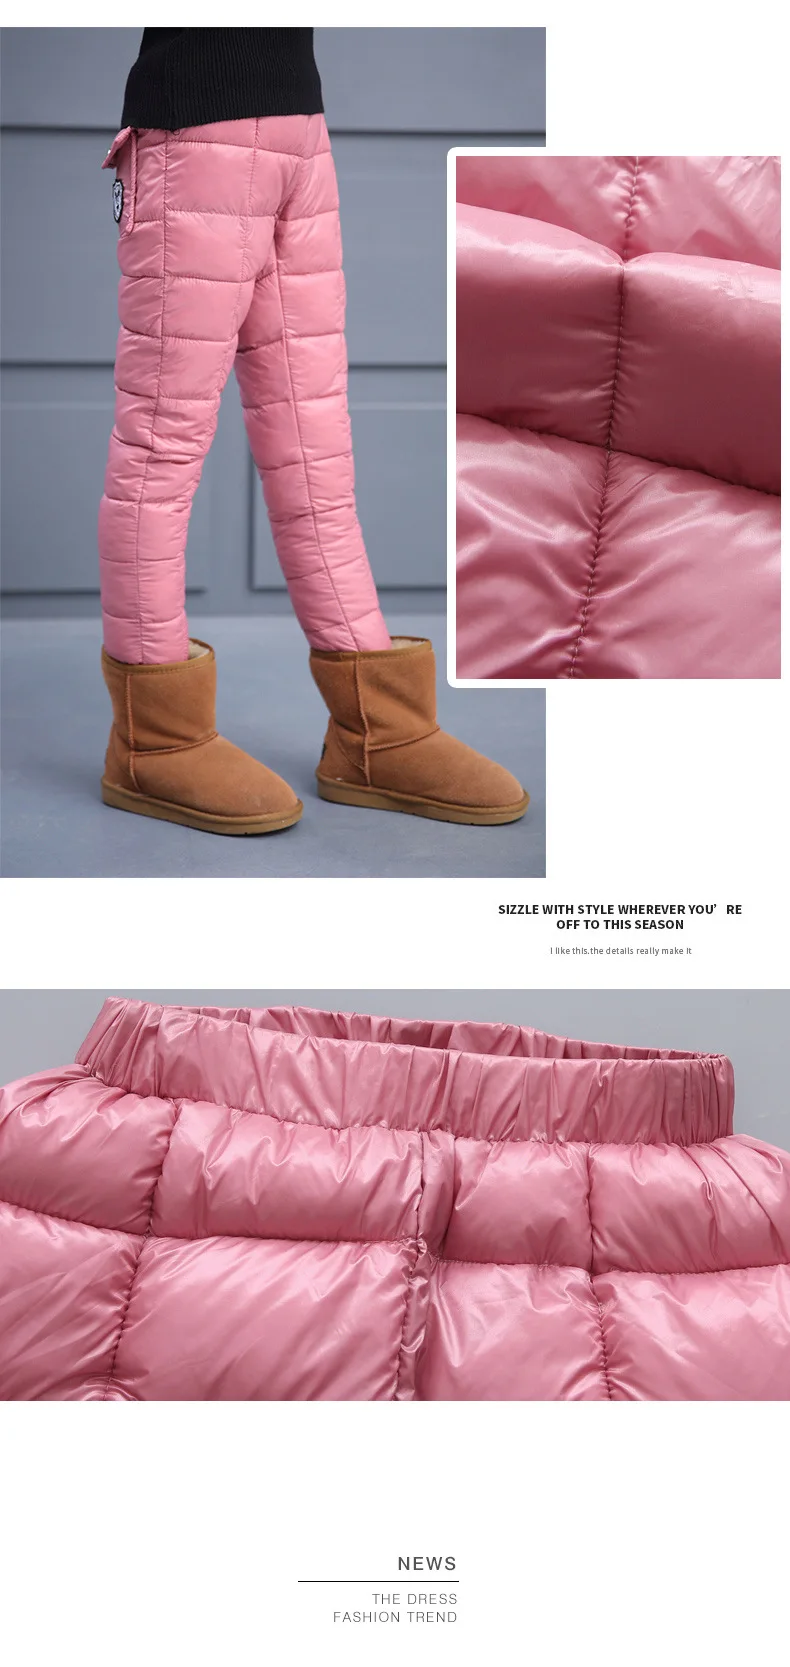 Зимняя детская одежда пуховая хлопковая одежда штаны для мальчиков леггинсы для девочек детские теплые пуховые брюки ветрозащитный водонепроницаемый для снега брюки